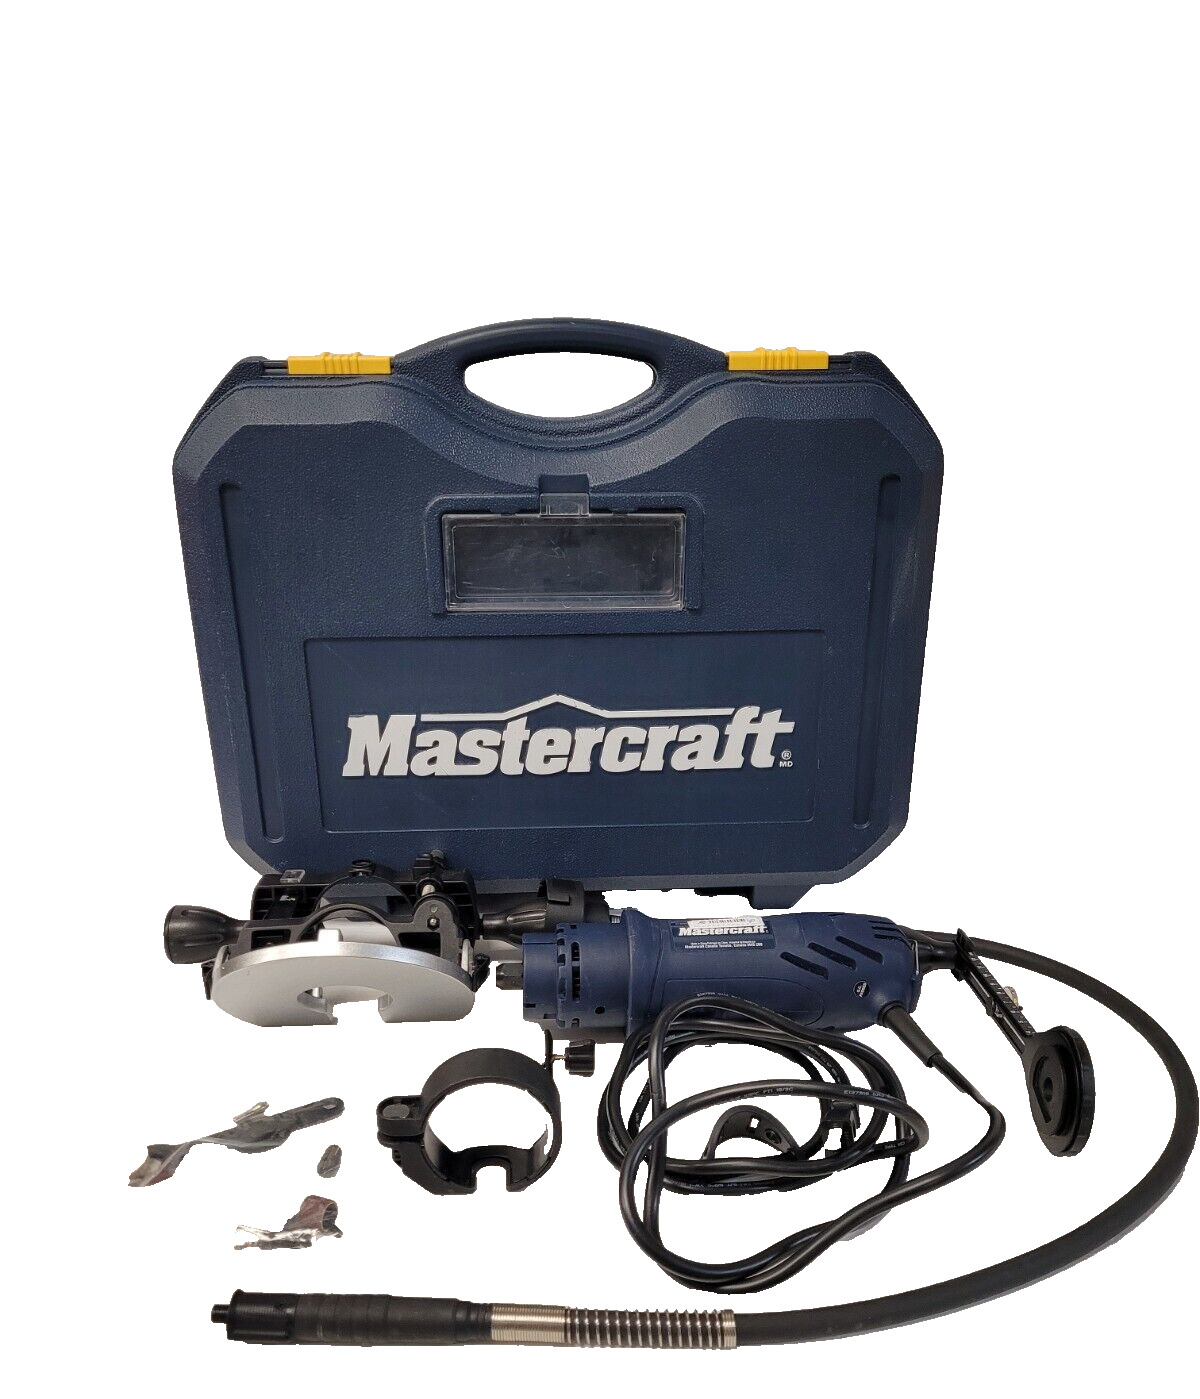 (N78446-1) MasterCraft 54-8204-0 Spin Saw